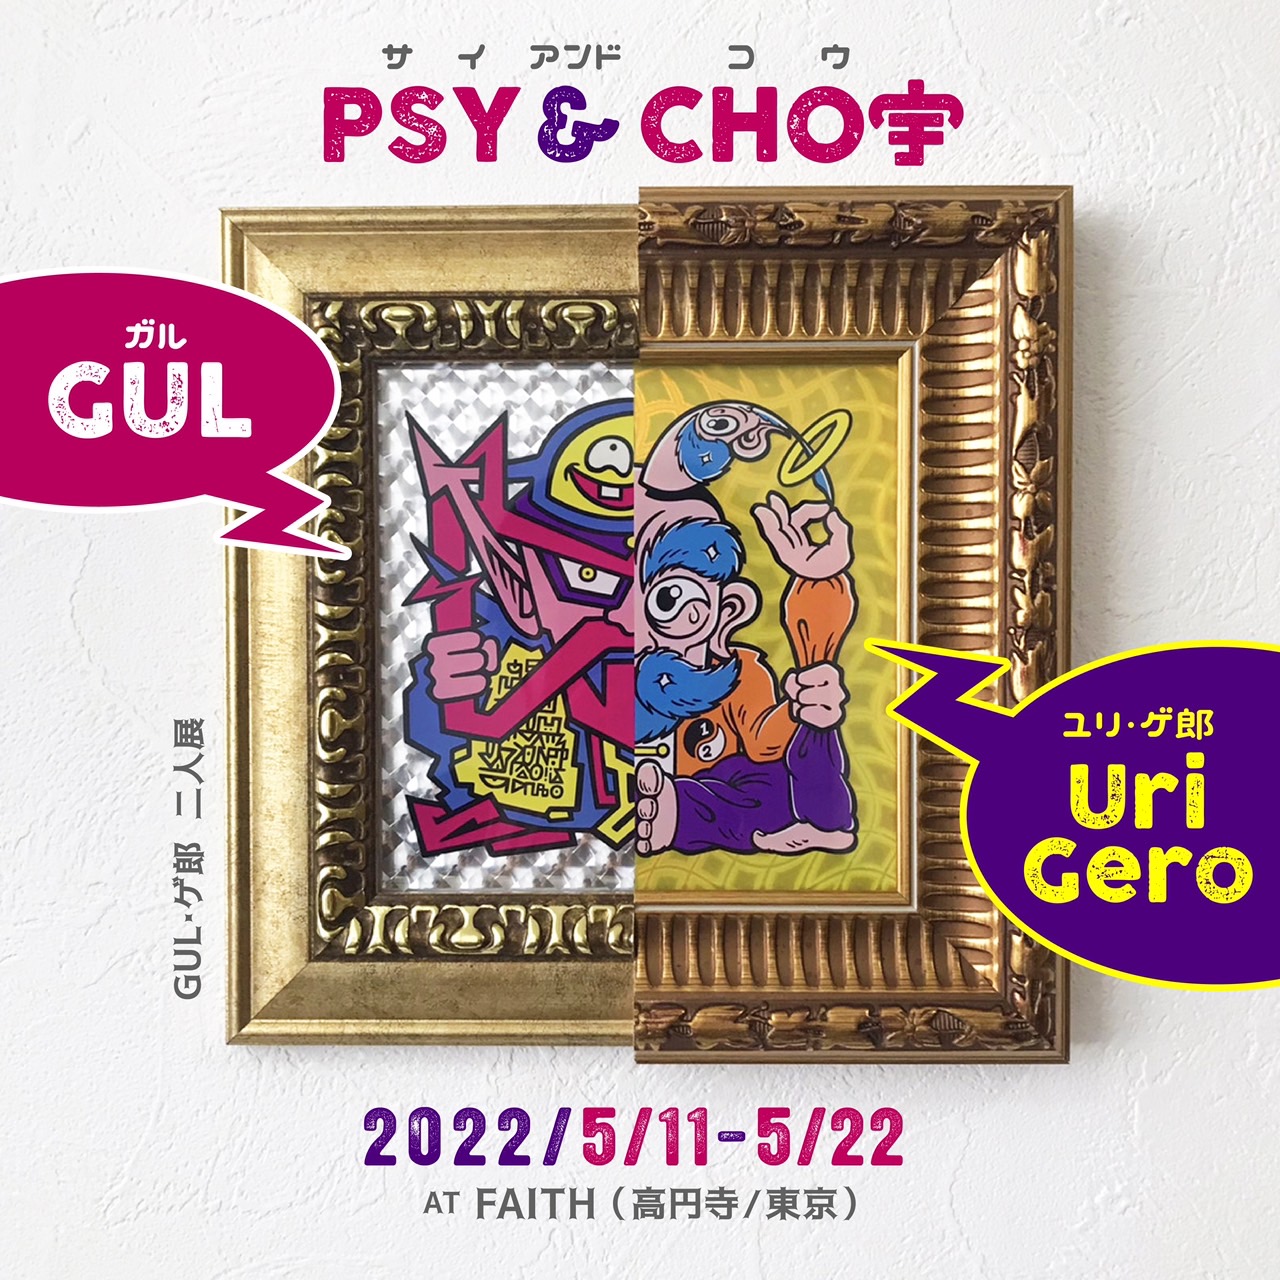 GUL & ユリ・ゲ郎 二人展「GUL・ゲ郎 / PSY&CHO宇」